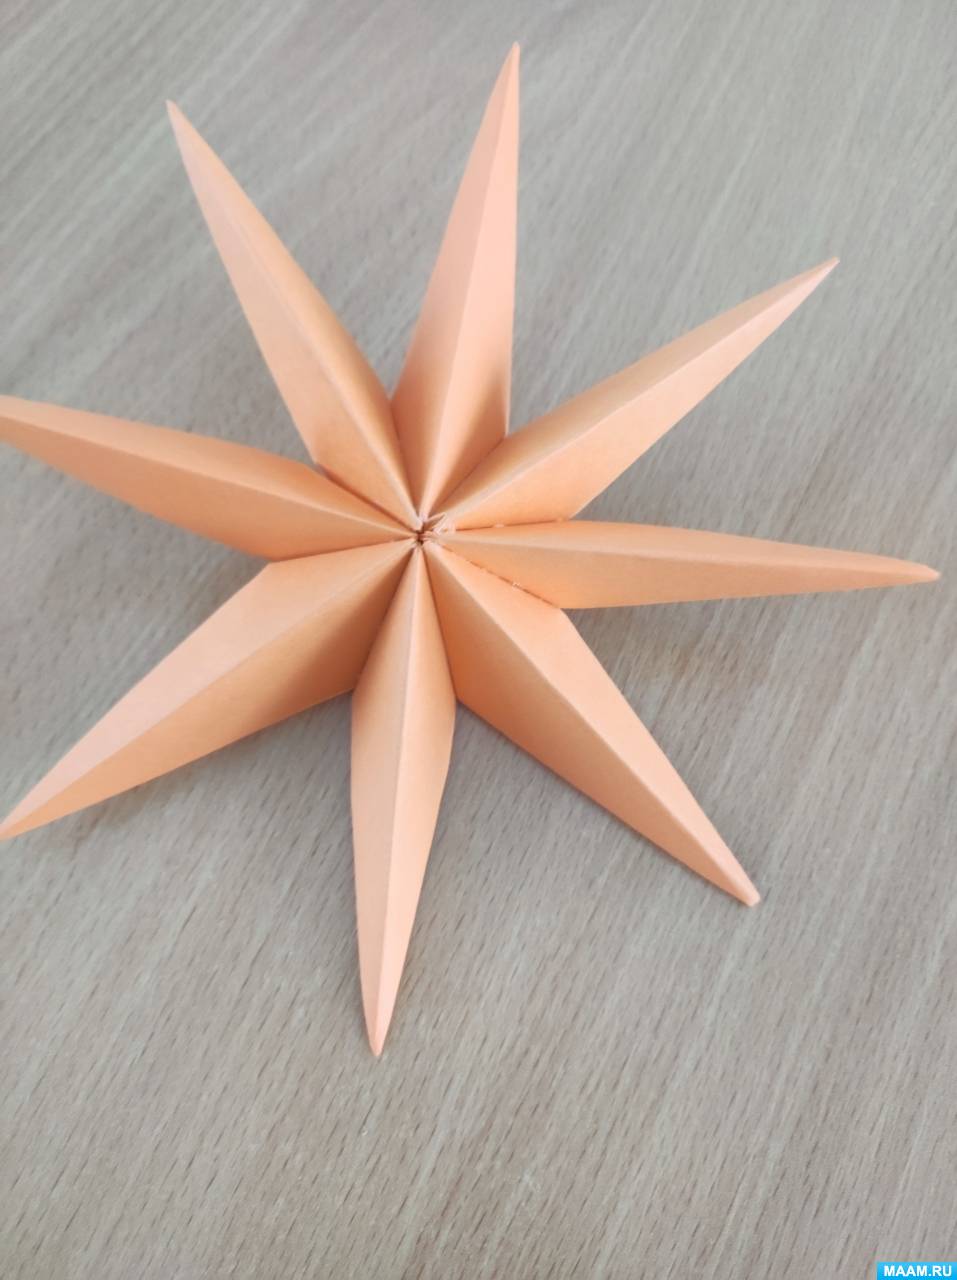 Рождественская звезда: мастерим в технике оригами | Библиотеки Архангельска